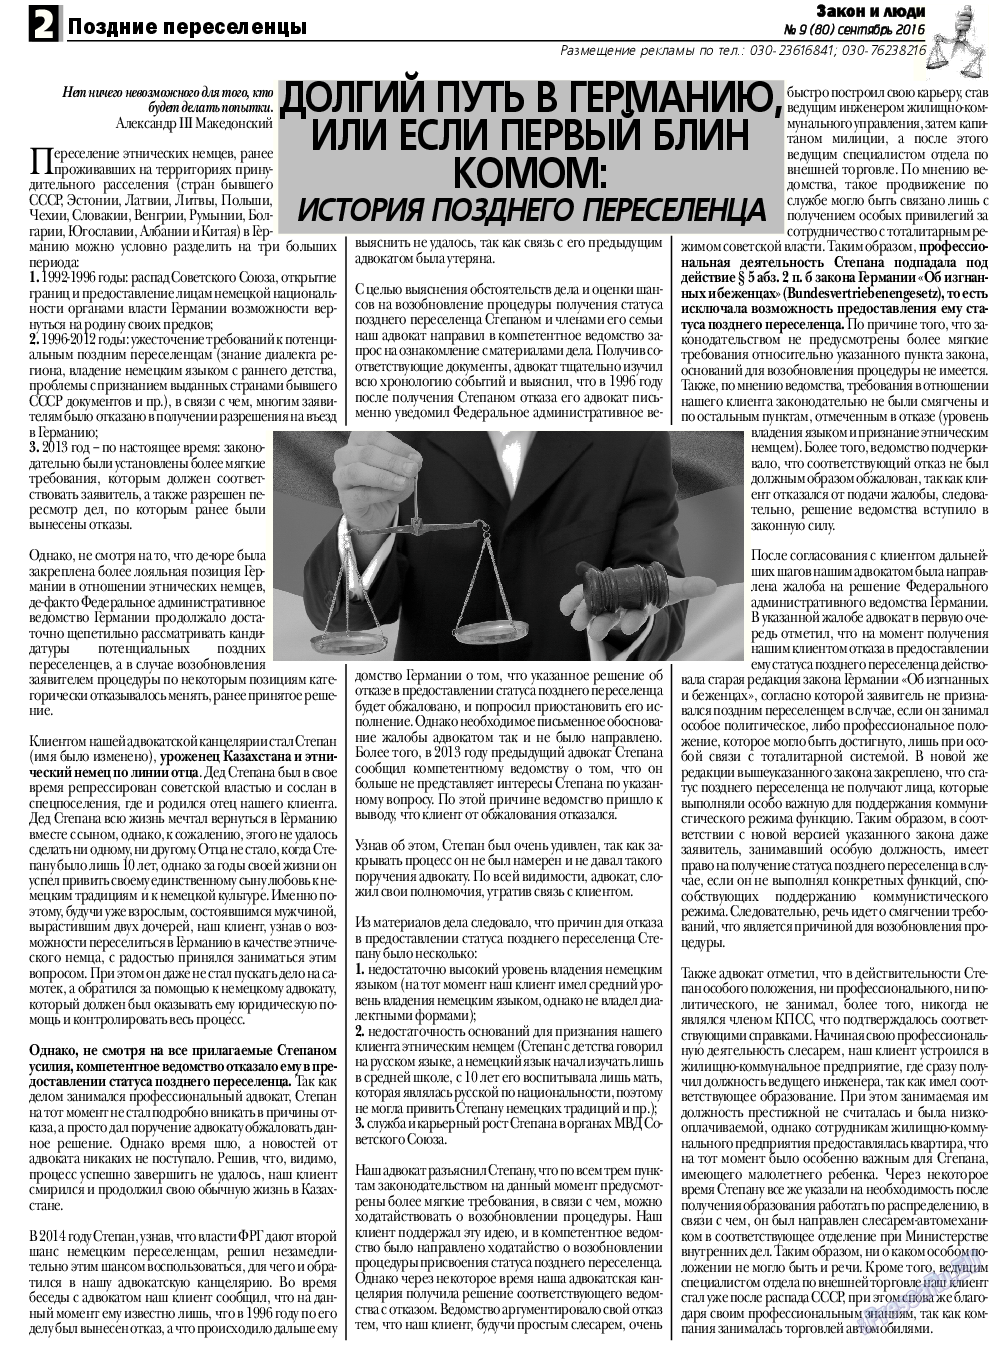 Закон и люди, газета. 2016 №9 стр.2